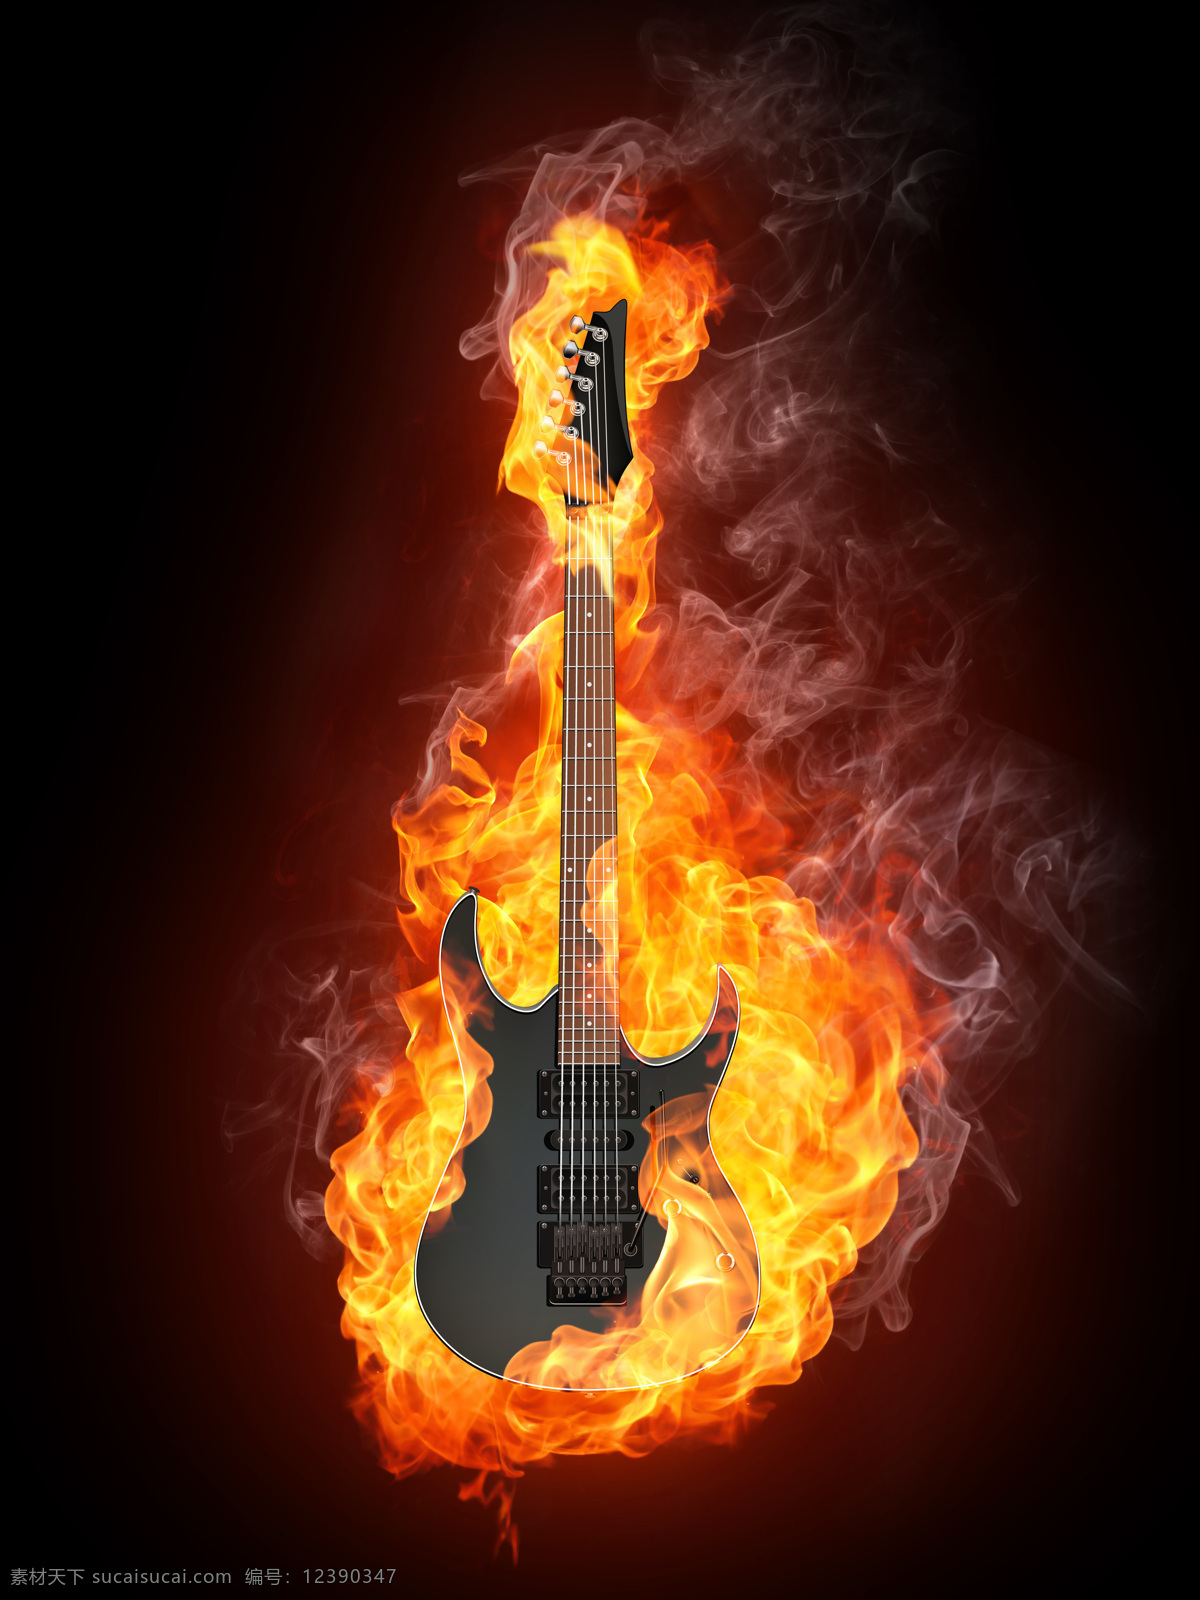 燃烧 贝斯 吉他 火焰 燃烧的吉他 火苗 电子吉他 乐器 音乐 影音娱乐 生活百科